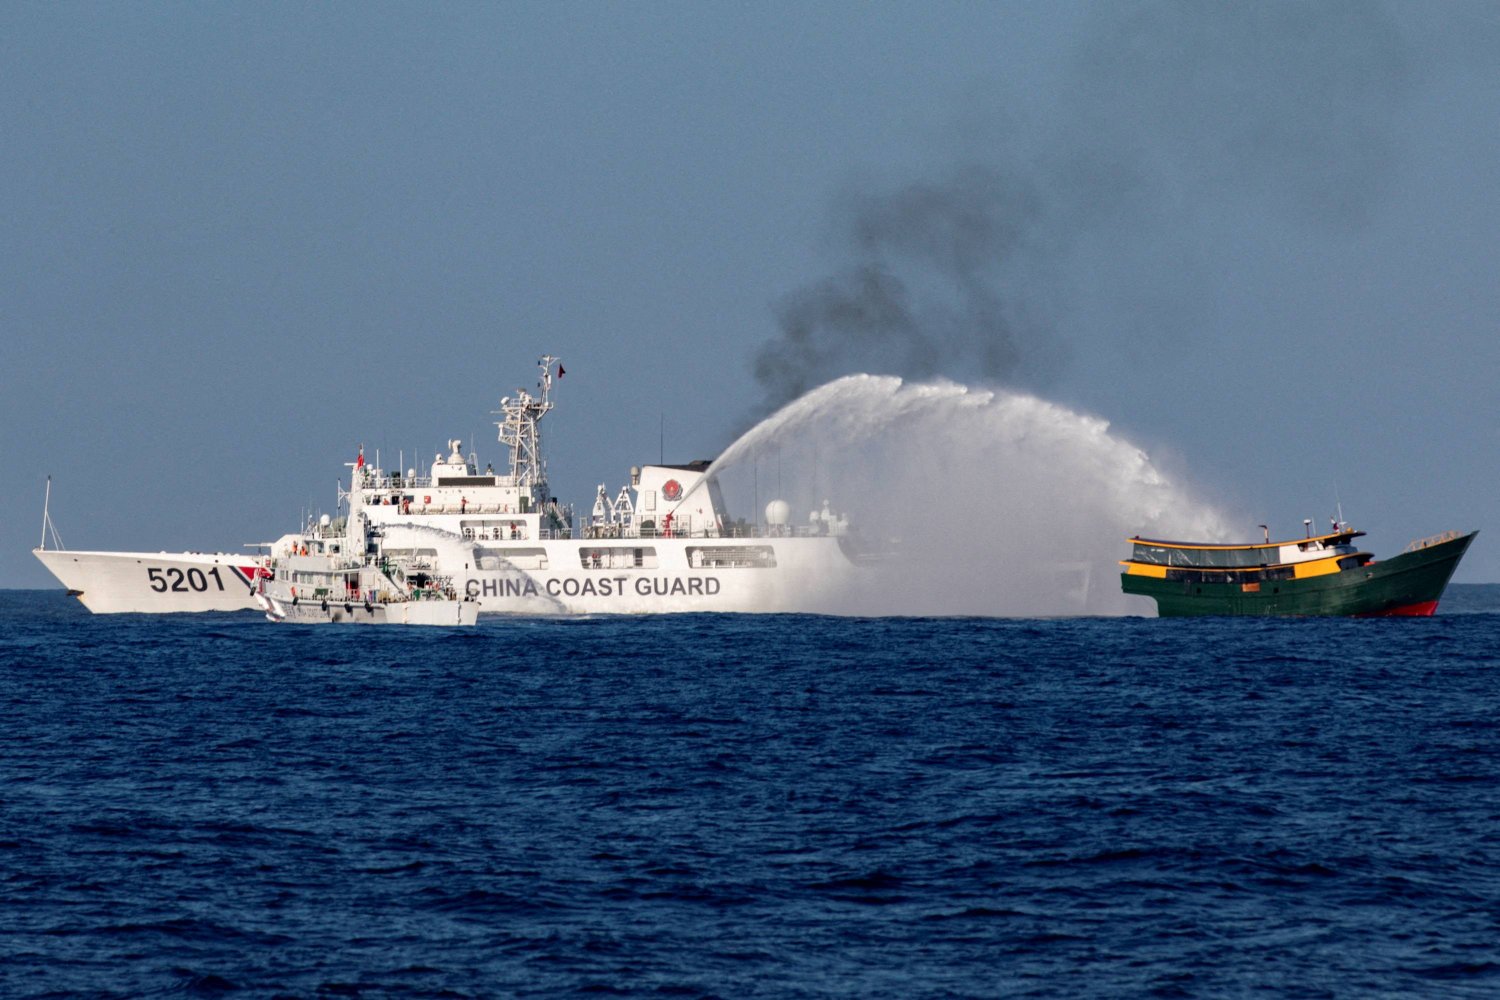 سفن خفر السواحل الصينية تطلق خراطيم المياه باتجاه سفينة إعادة الإمداد الفلبينية التي كانت في طريقها إلى بحر الصين الجنوبي (رويترز)